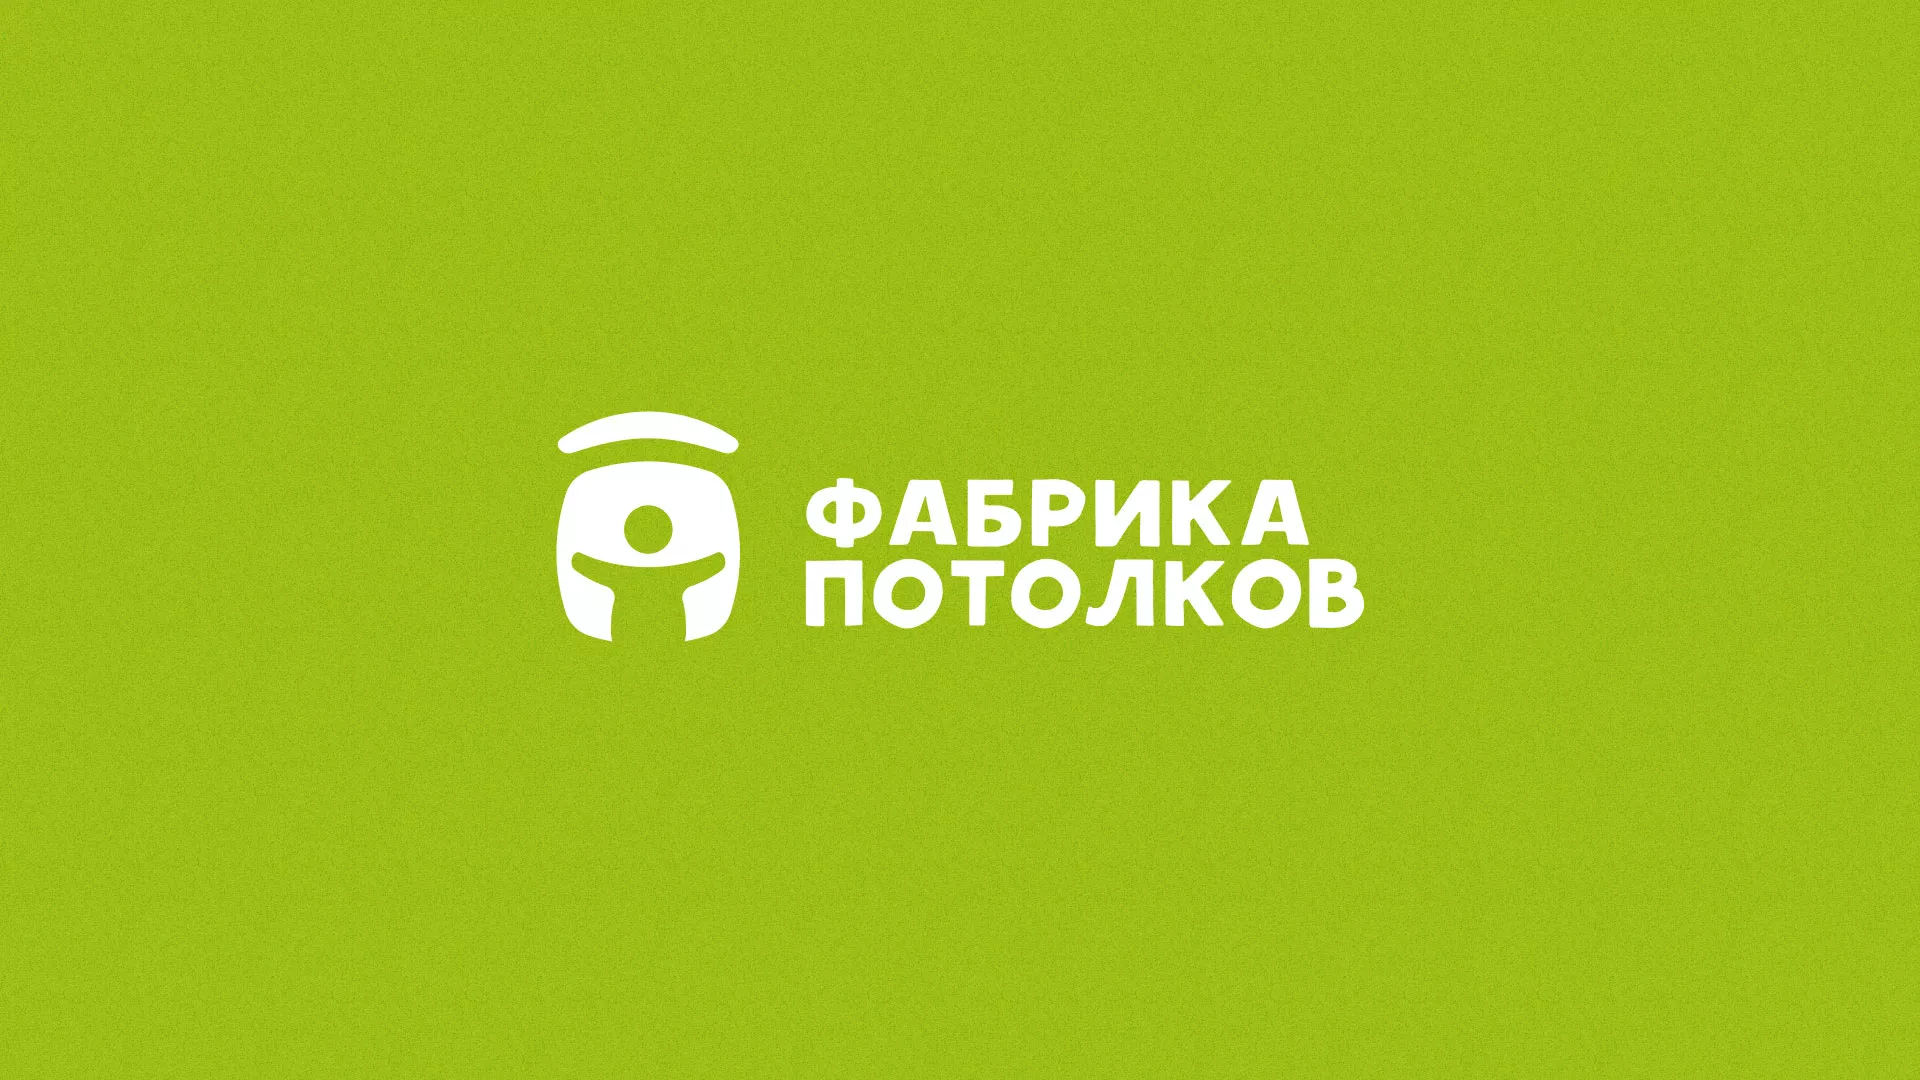 Разработка логотипа для производства натяжных потолков в Пудоже